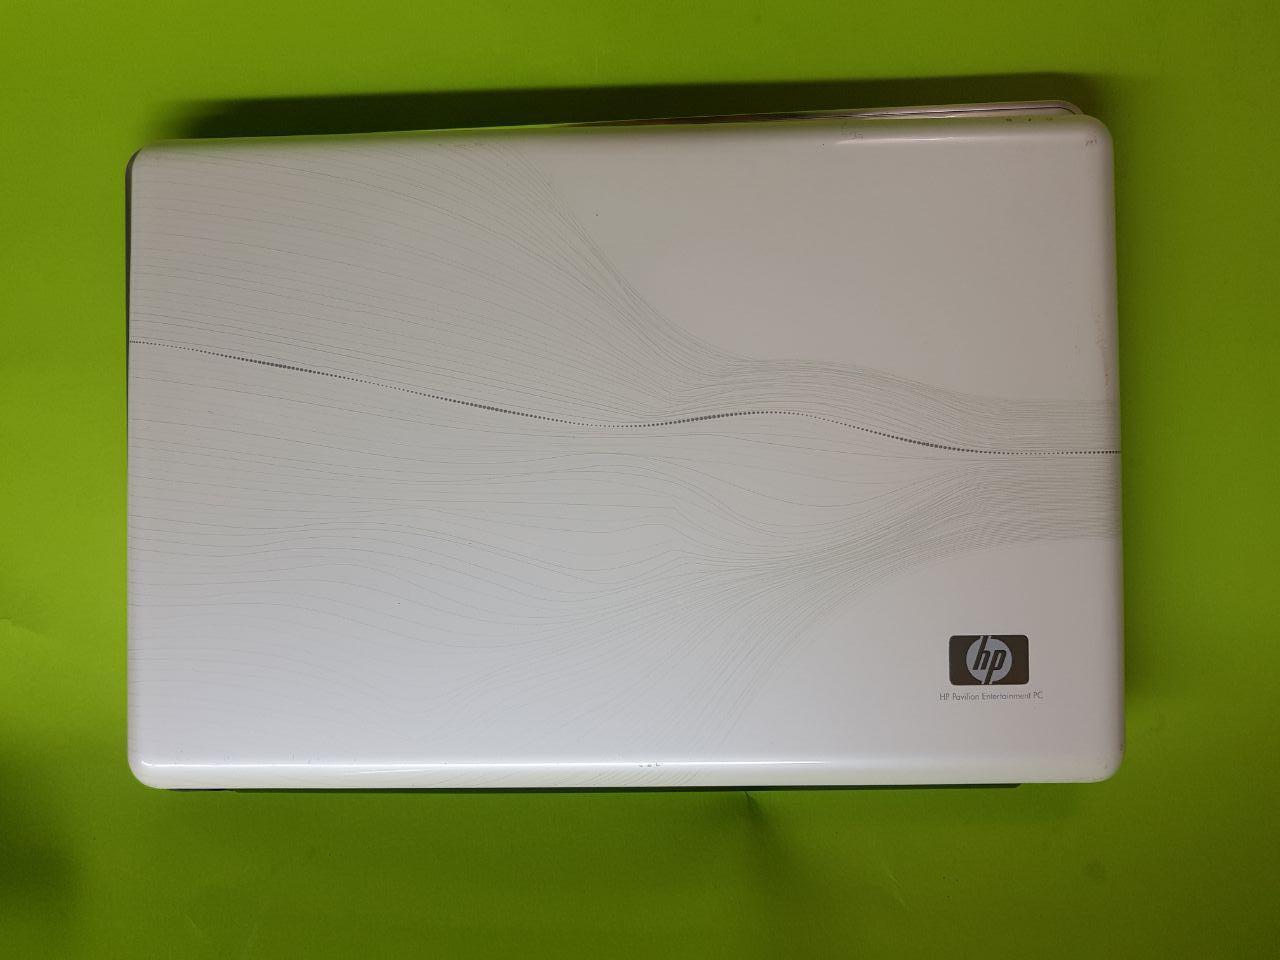 Розбирання ноутбука HP DV6-1460er/DV6-1400